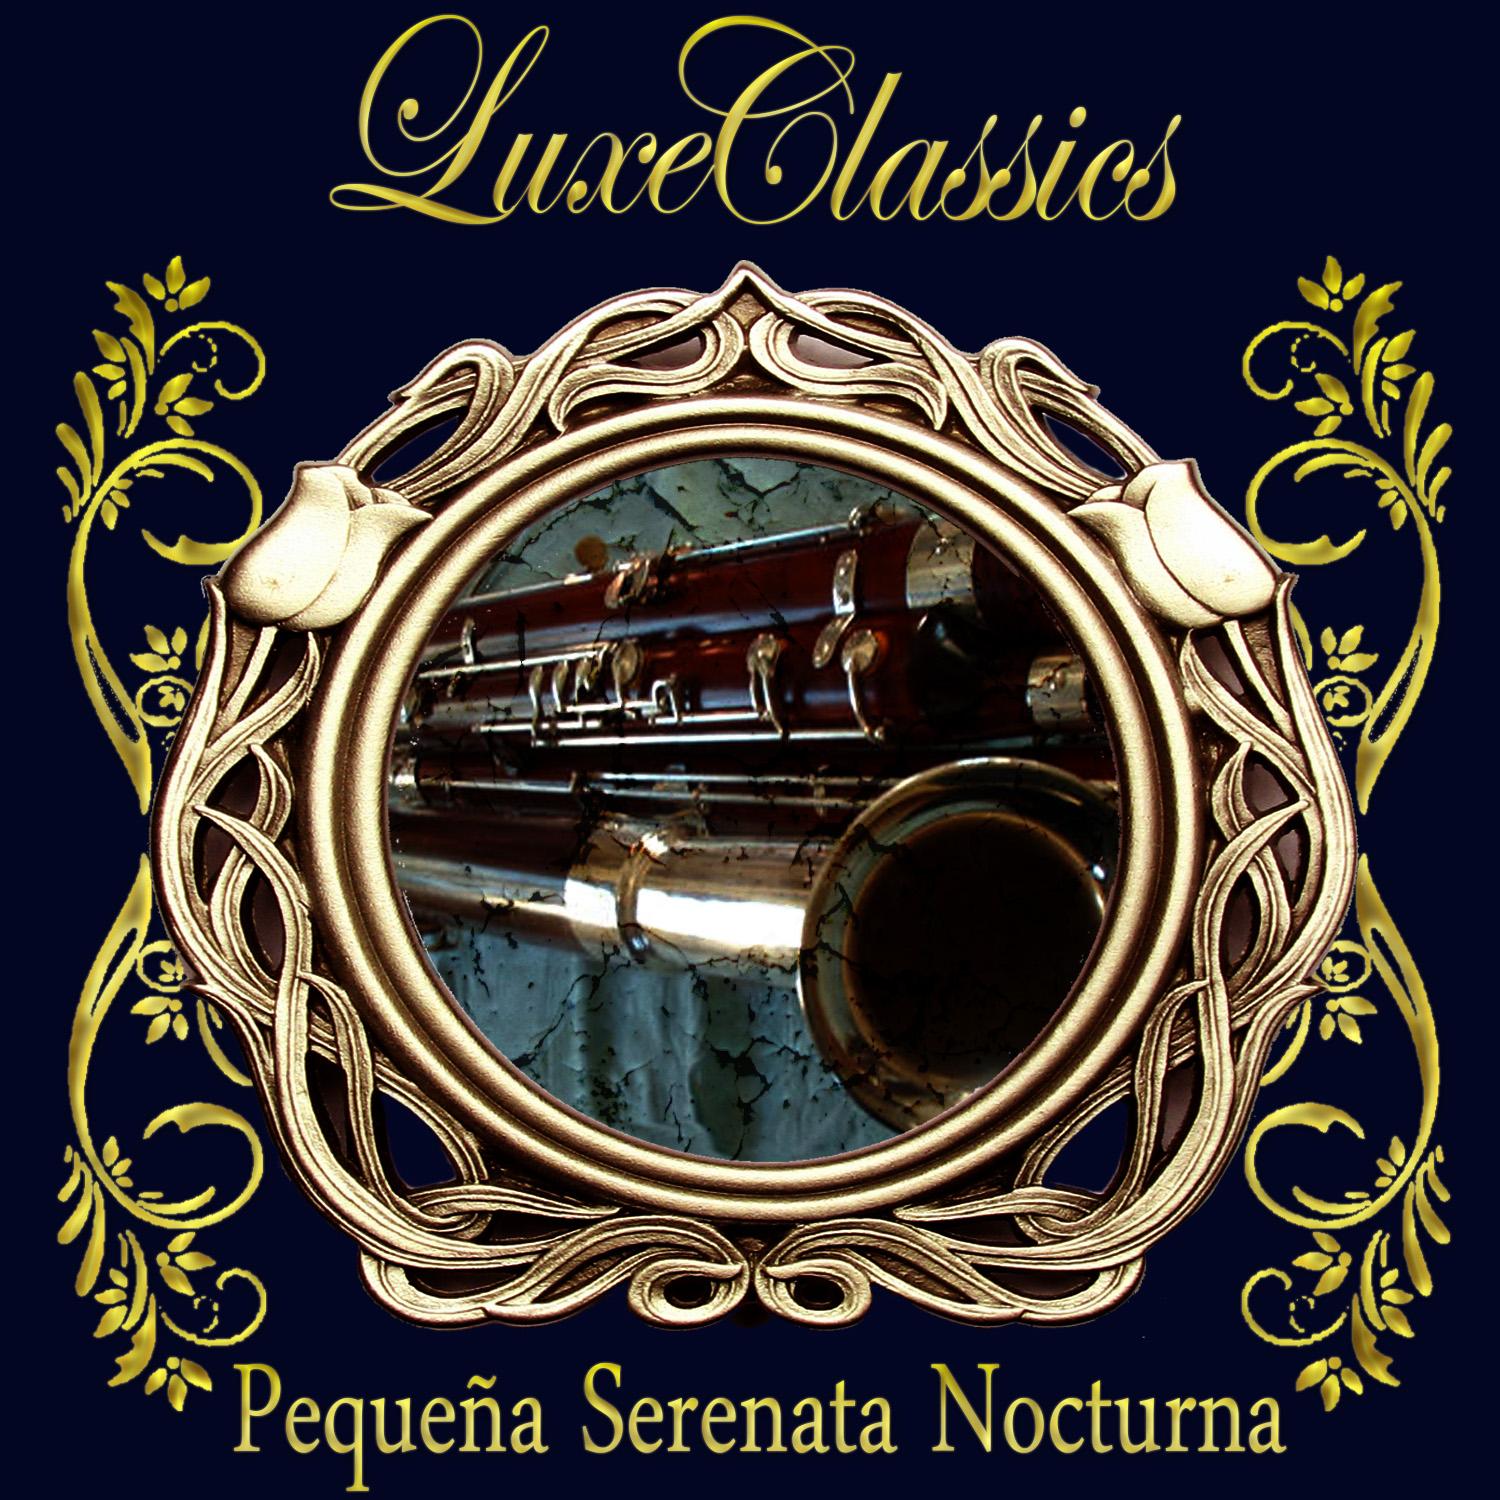 Luxe Classics: Peque a Serenata Nocturna